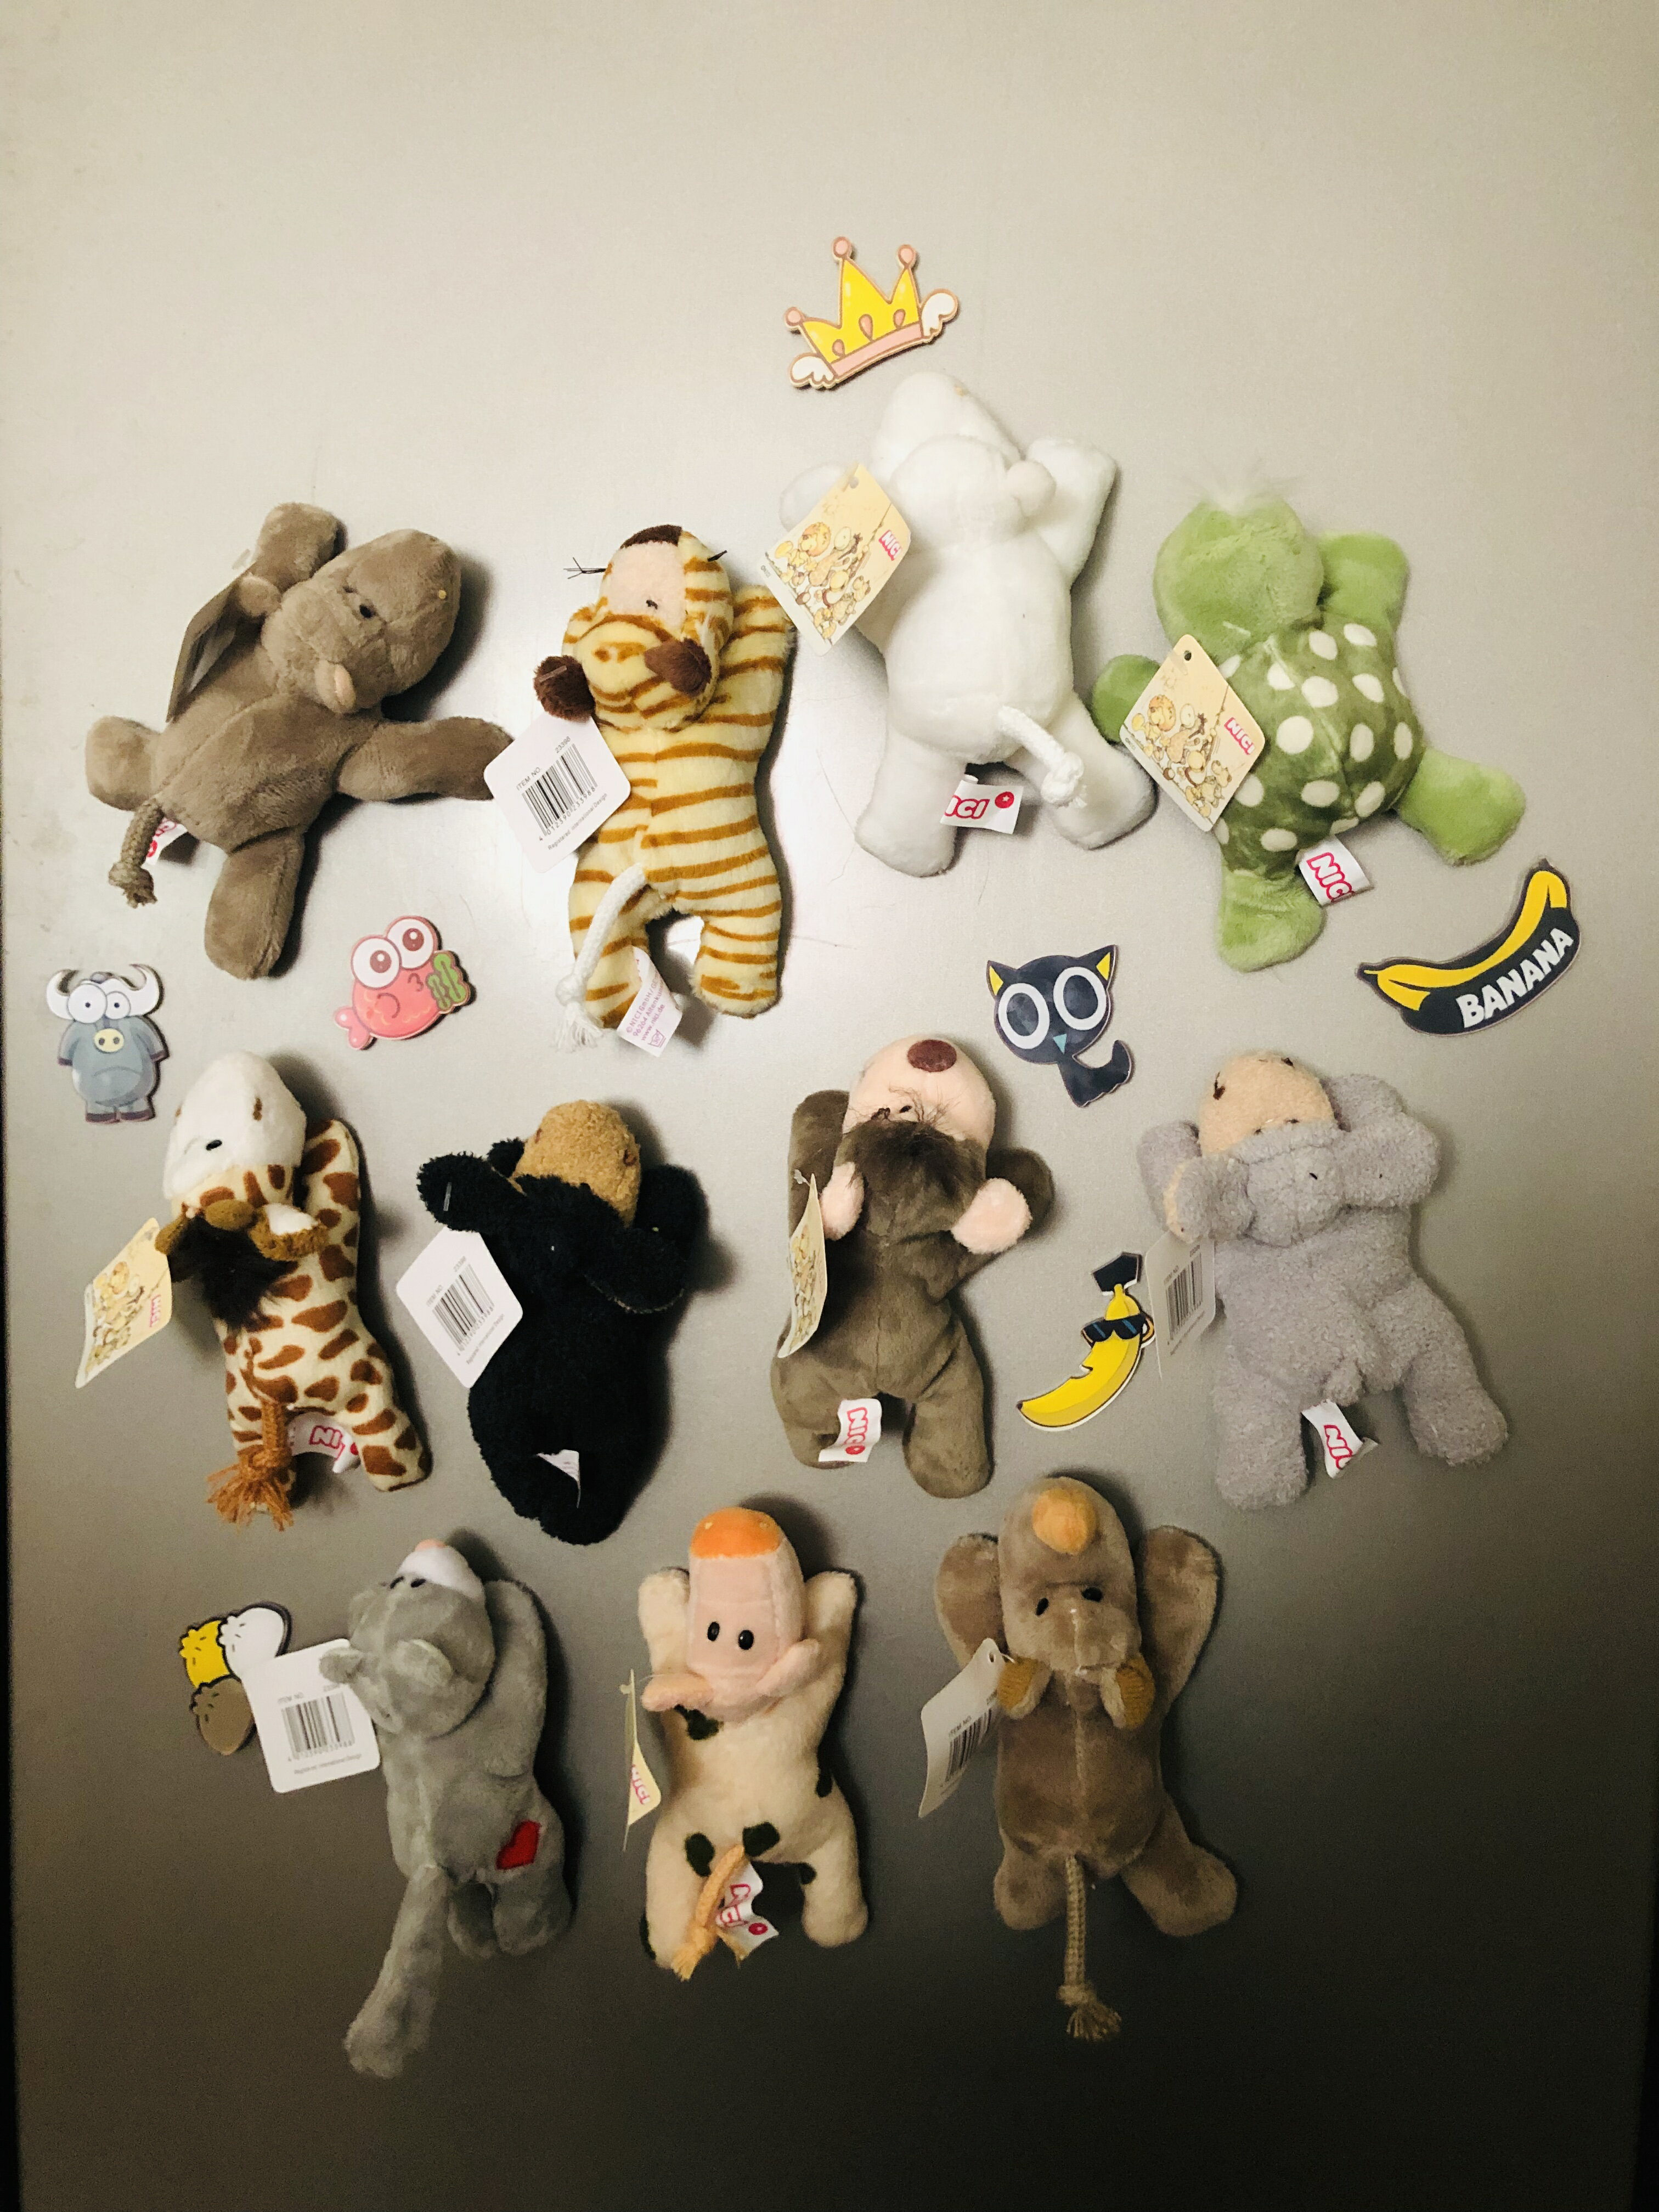 卡通毛絨玩具冰箱貼可愛動物冰箱磁貼創意時尚家居擺件冰箱貼磁貼